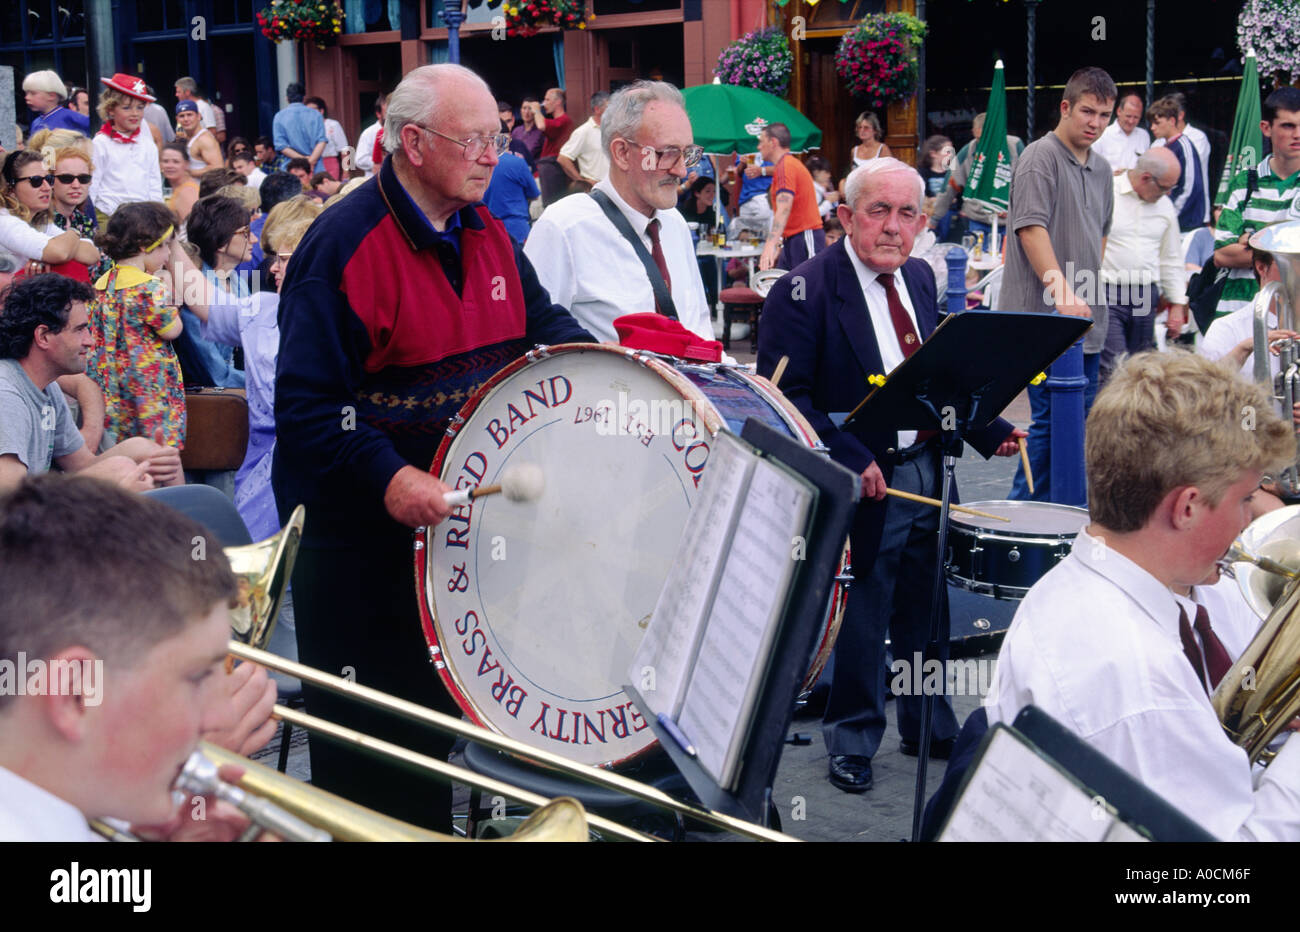 Harmonie locale jouant dans le centre-ville de Cobh Cobh, sur l'île Great Harbour, comté de Cork, Irlande. Banque D'Images